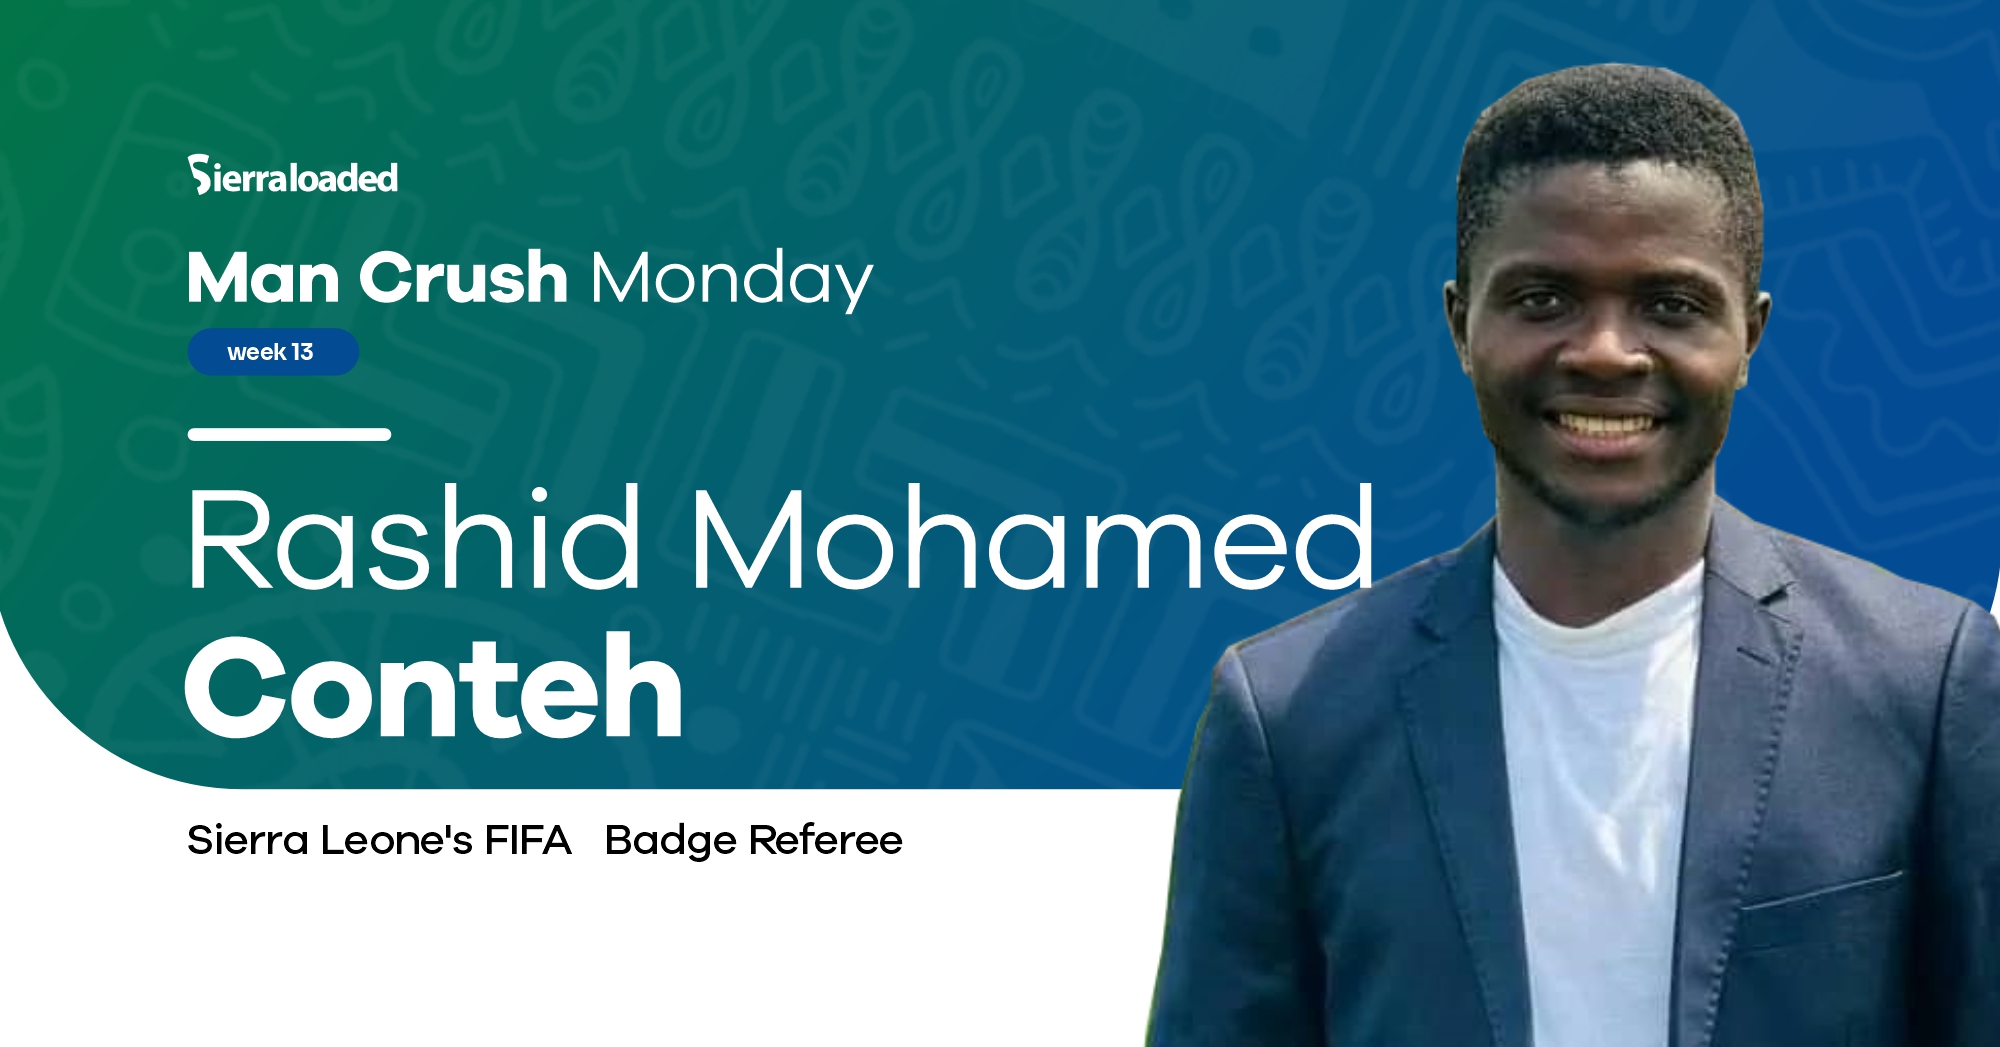 Meet Rashid Mohamed Conteh, Sierraloaded Man Crush Monday